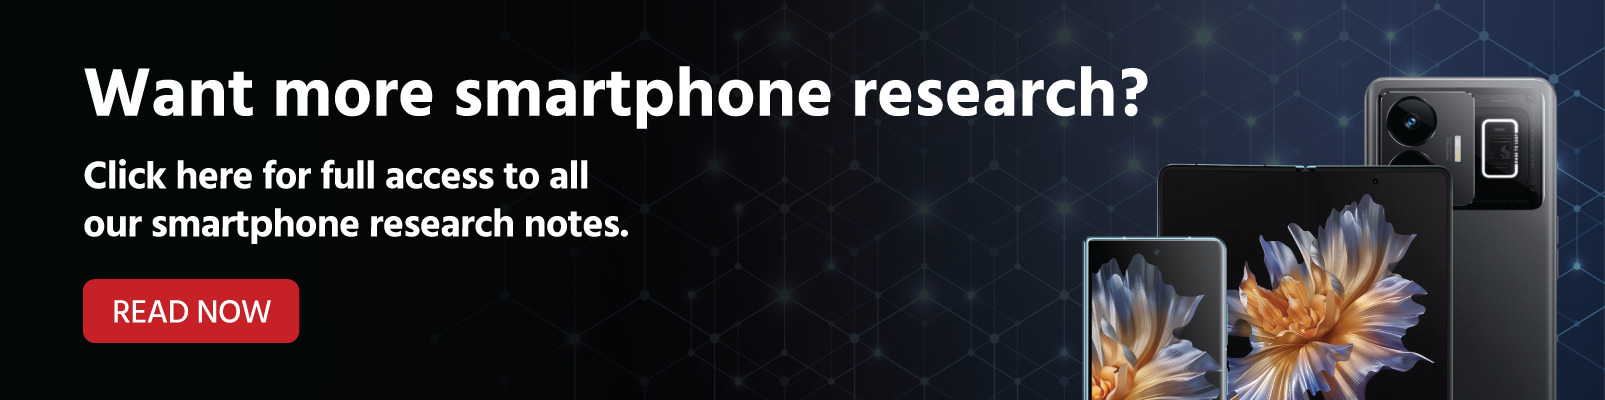 Smartphones research banner